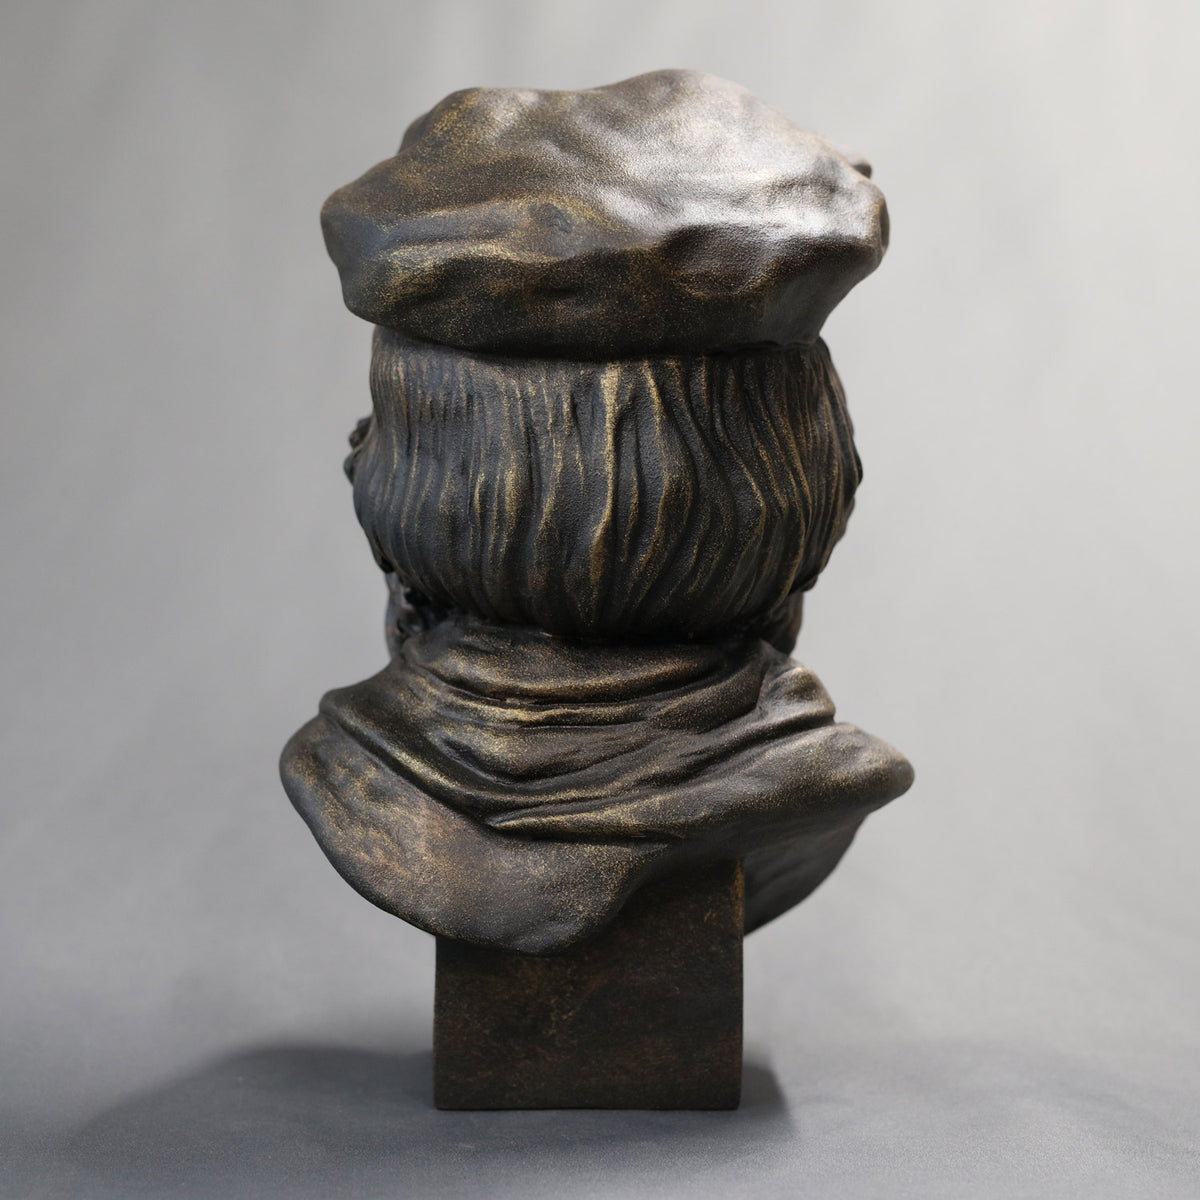 John Wycliffe - Sculpture